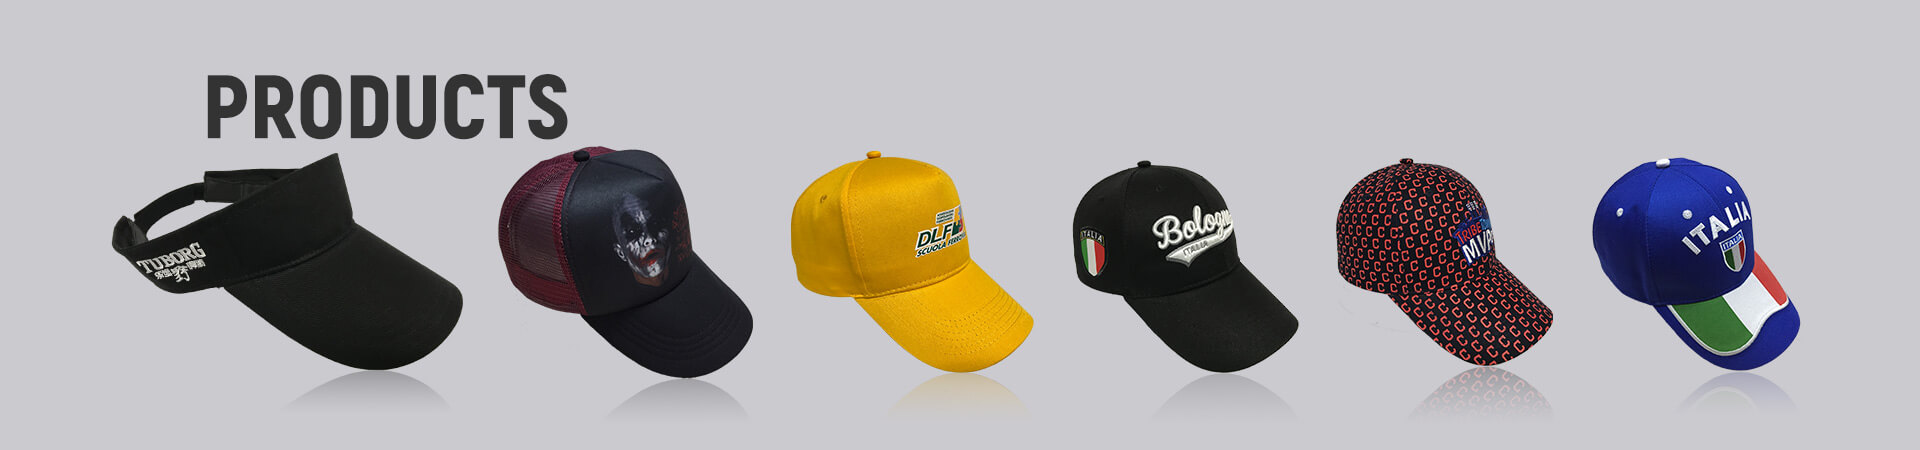 Gorra de camionero bordada Archives - Gorra de béisbol, gorra deportiva, gorra de golf, gorra de pescador, gorra de camionero